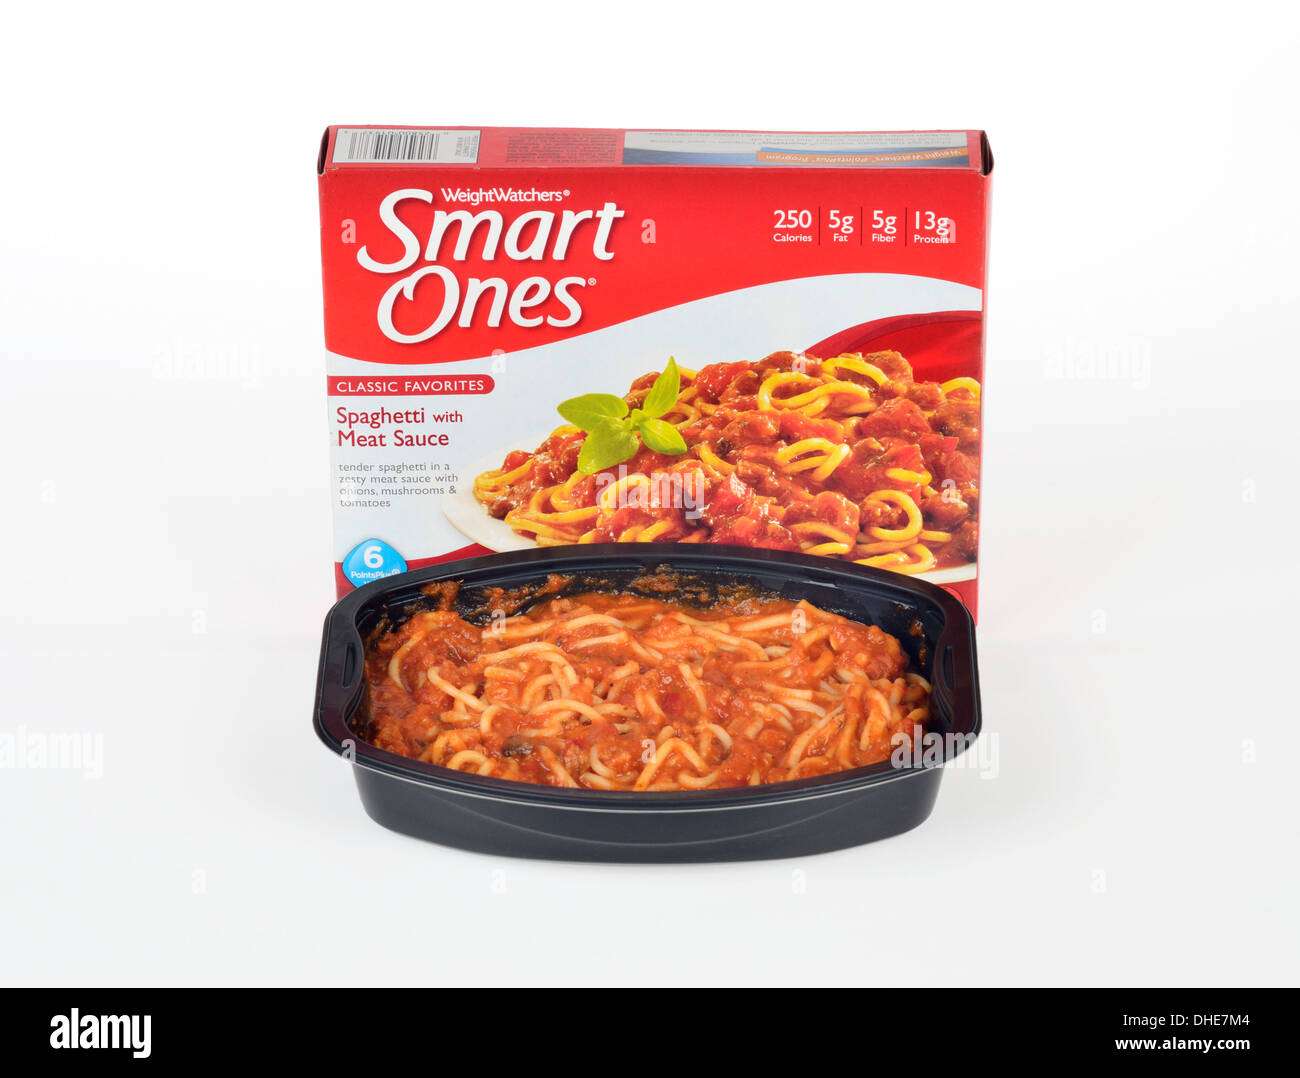 Weight Watchers klugen eingefroren Spaghetti mit Soße fertig-Mahlzeit gekocht Abendessen mit Verpackung auf weißem Hintergrund, Ausschnitt. USA Stockfoto